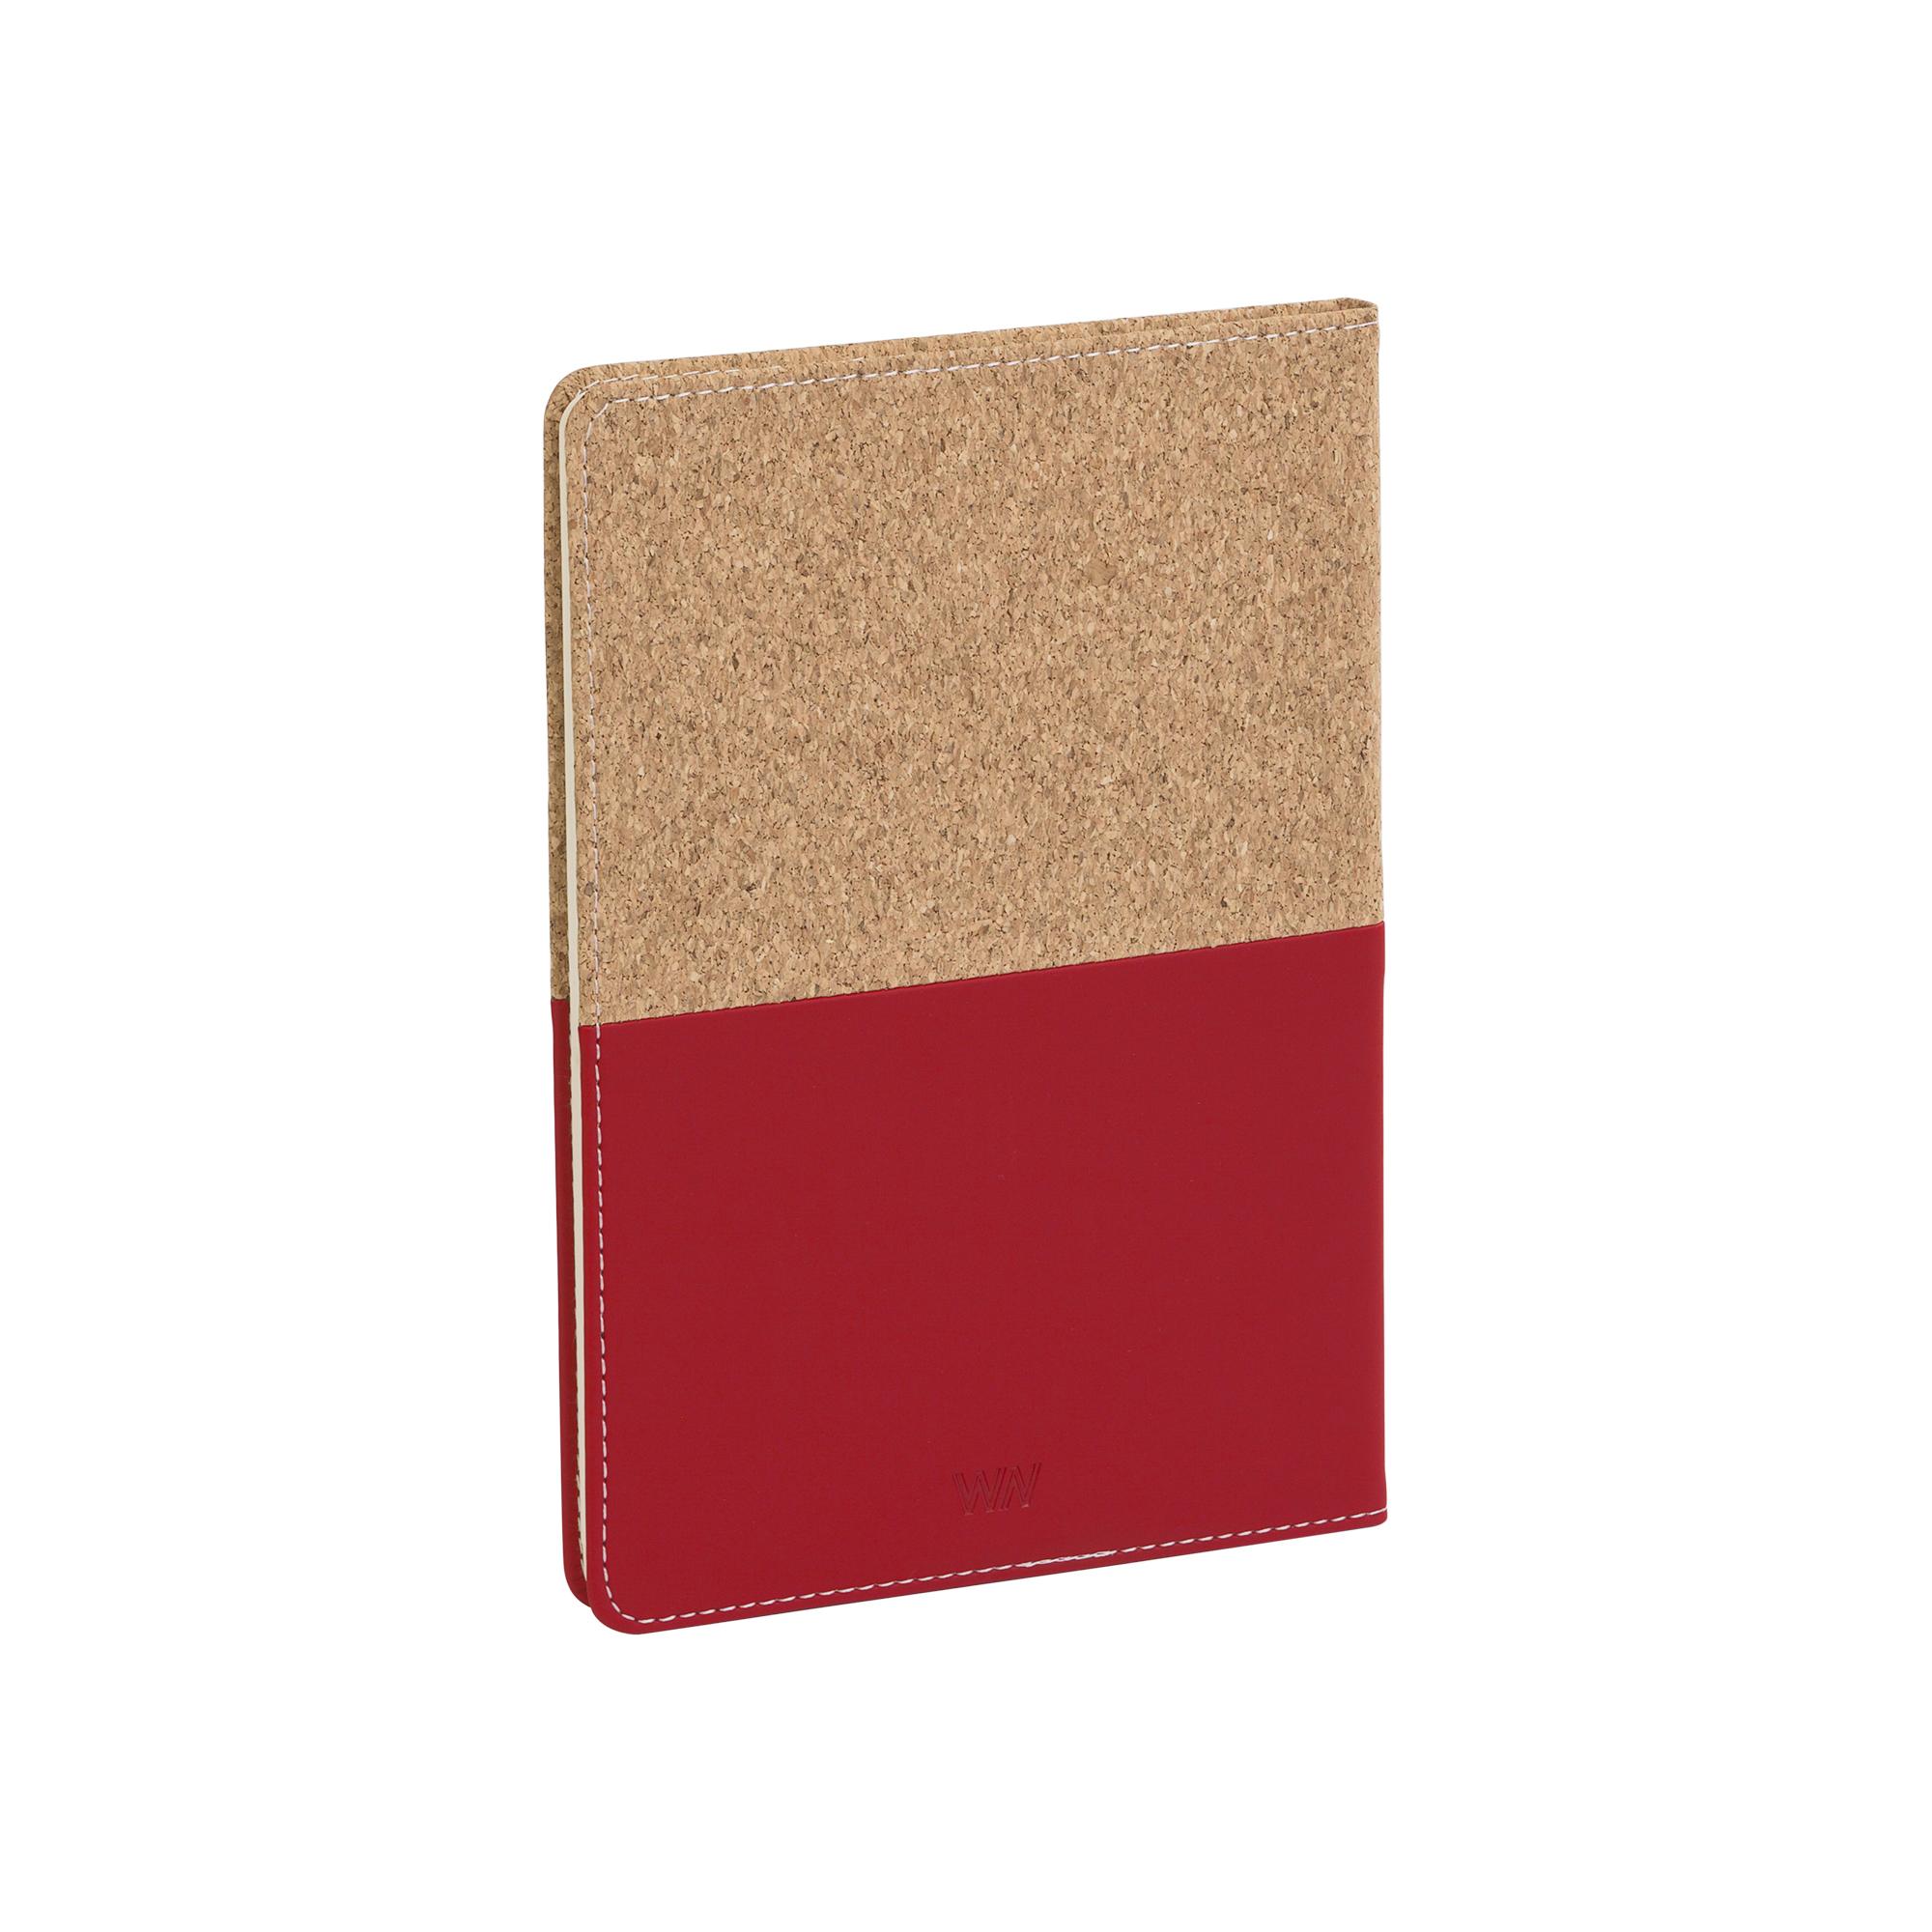 Блокнот "Фьюджи", формат А5, покрытие soft touch+пробка, цвет красный, фото 2